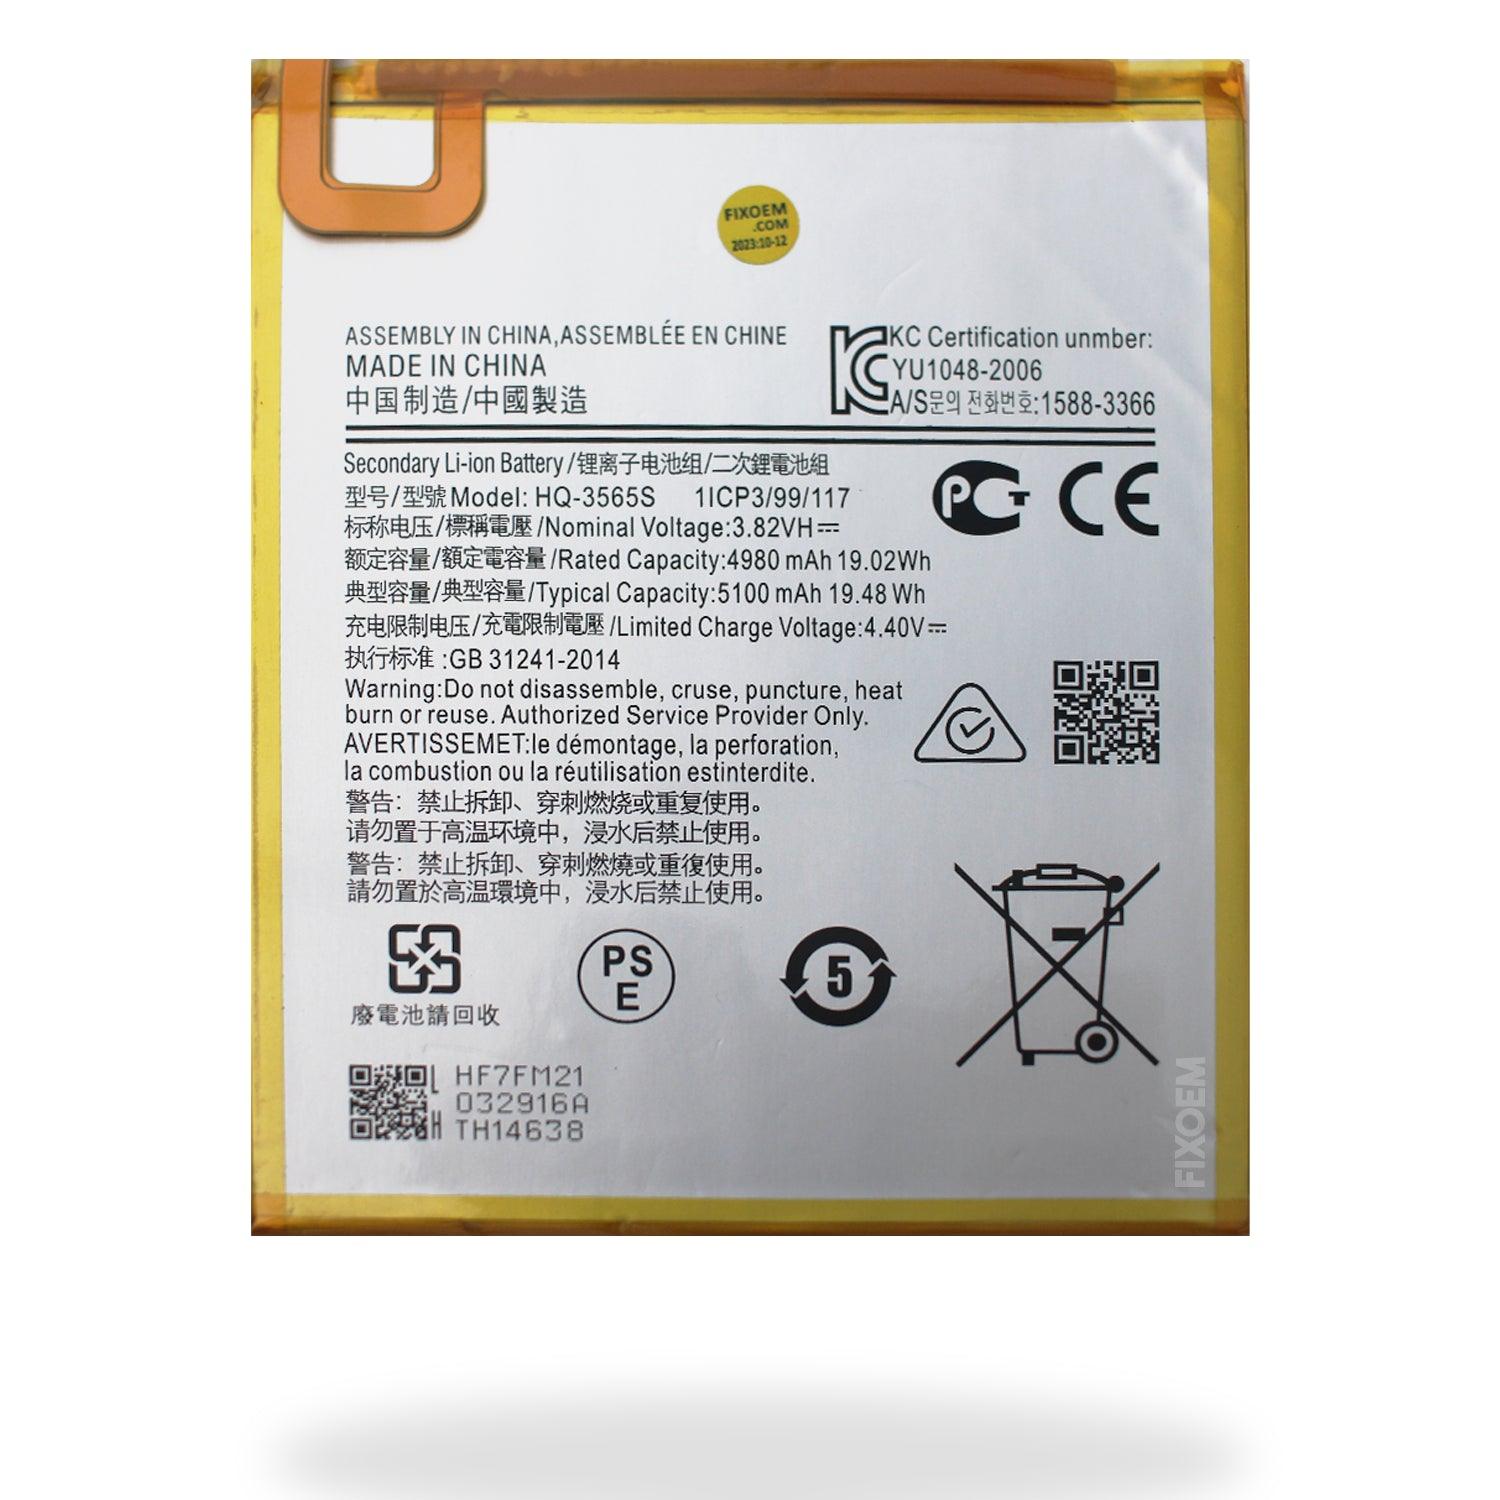 Bateria Samsung Tab A7 Lite Sm-T220 Swd-Wt-N8 a solo $ 170.00 Refaccion y puestos celulares, refurbish y microelectronica.- FixOEM